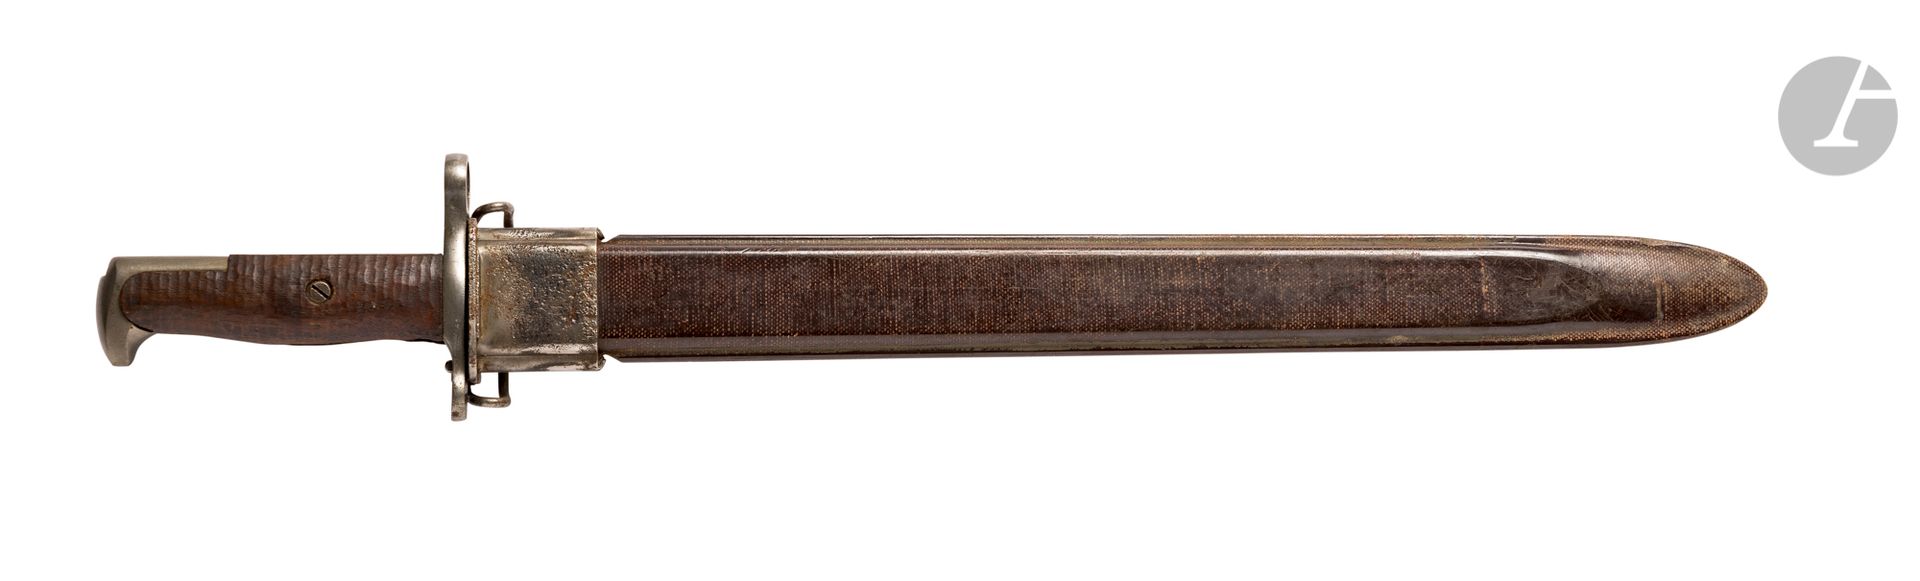 Null Baionetta
USAAmerican modello 1905. 
Maniglia con piastre in legno e raccor&hellip;